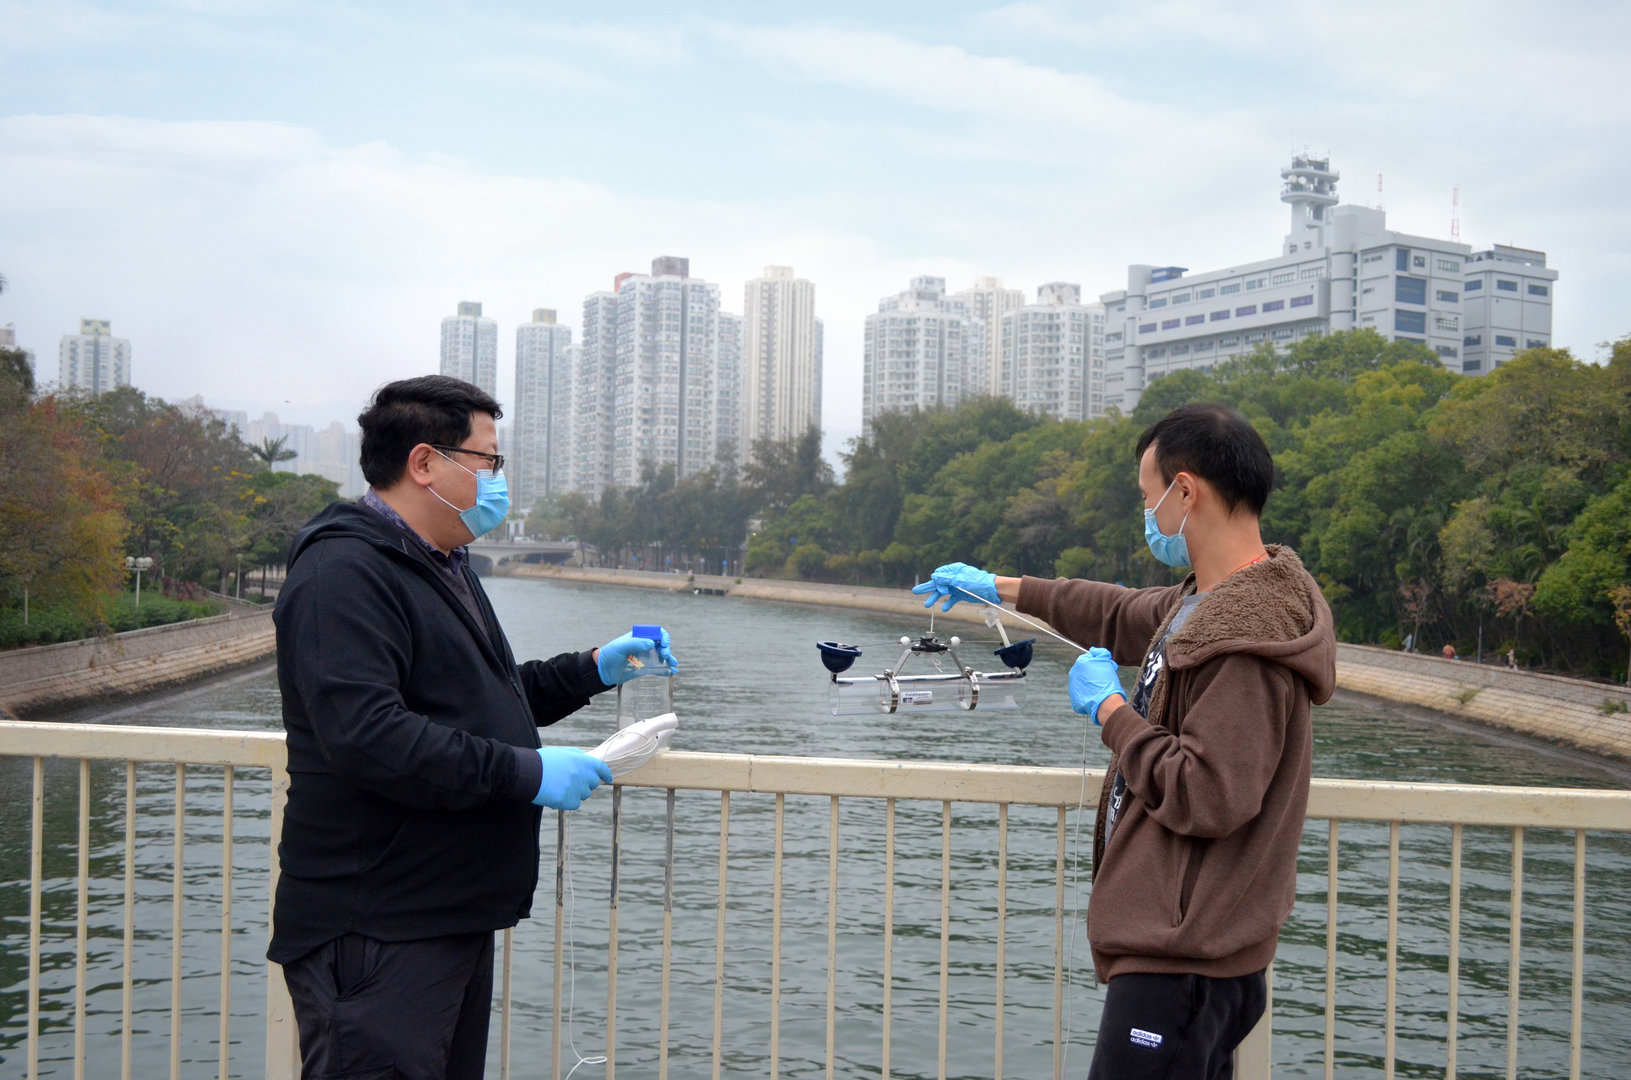 香港01: 啟德河錄得34種藥物樣本冠絕全球　抗生素殘留物或造就超級細菌